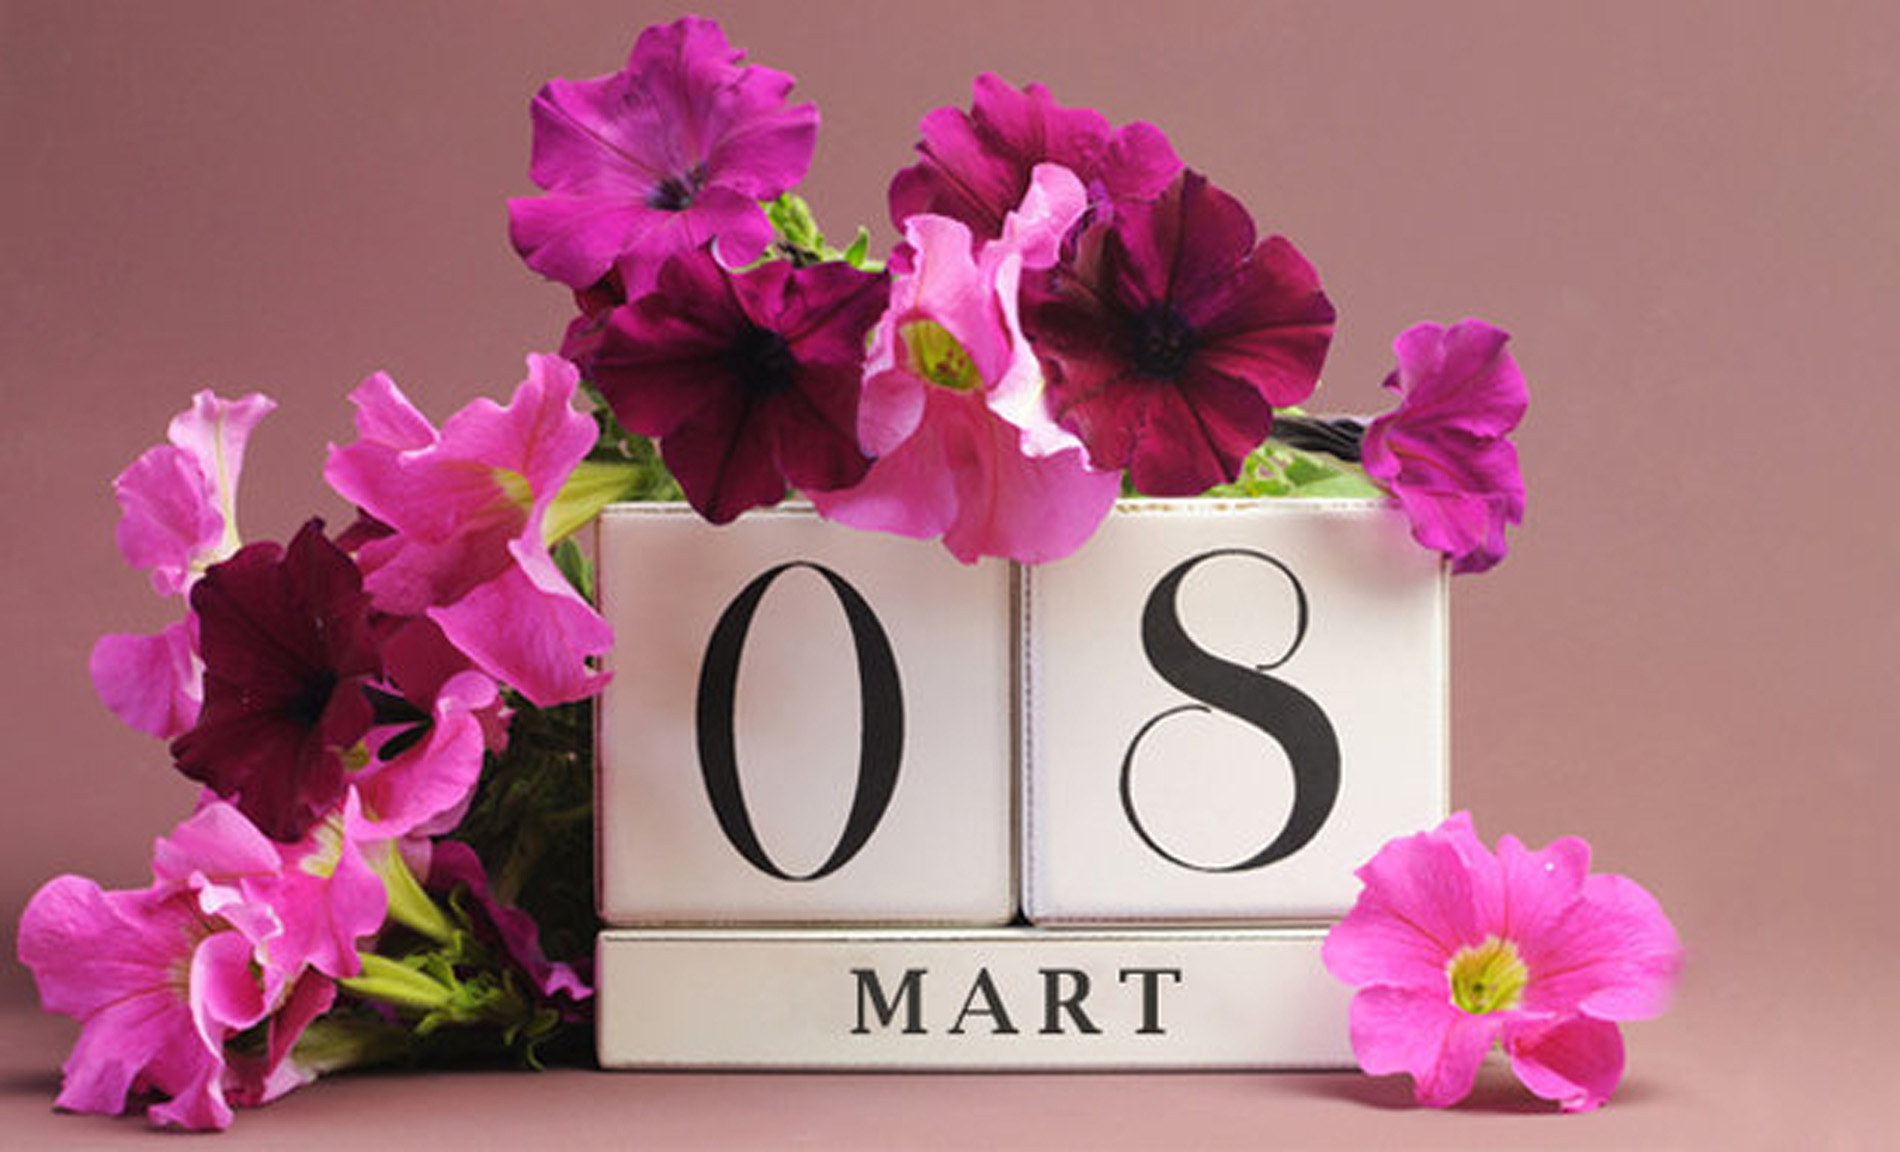 8 Mart Dünya Kadınlar günü güzel sözler | Anlamlı, uzun, kısa, etkileyici 8 Mart sözleri 2022